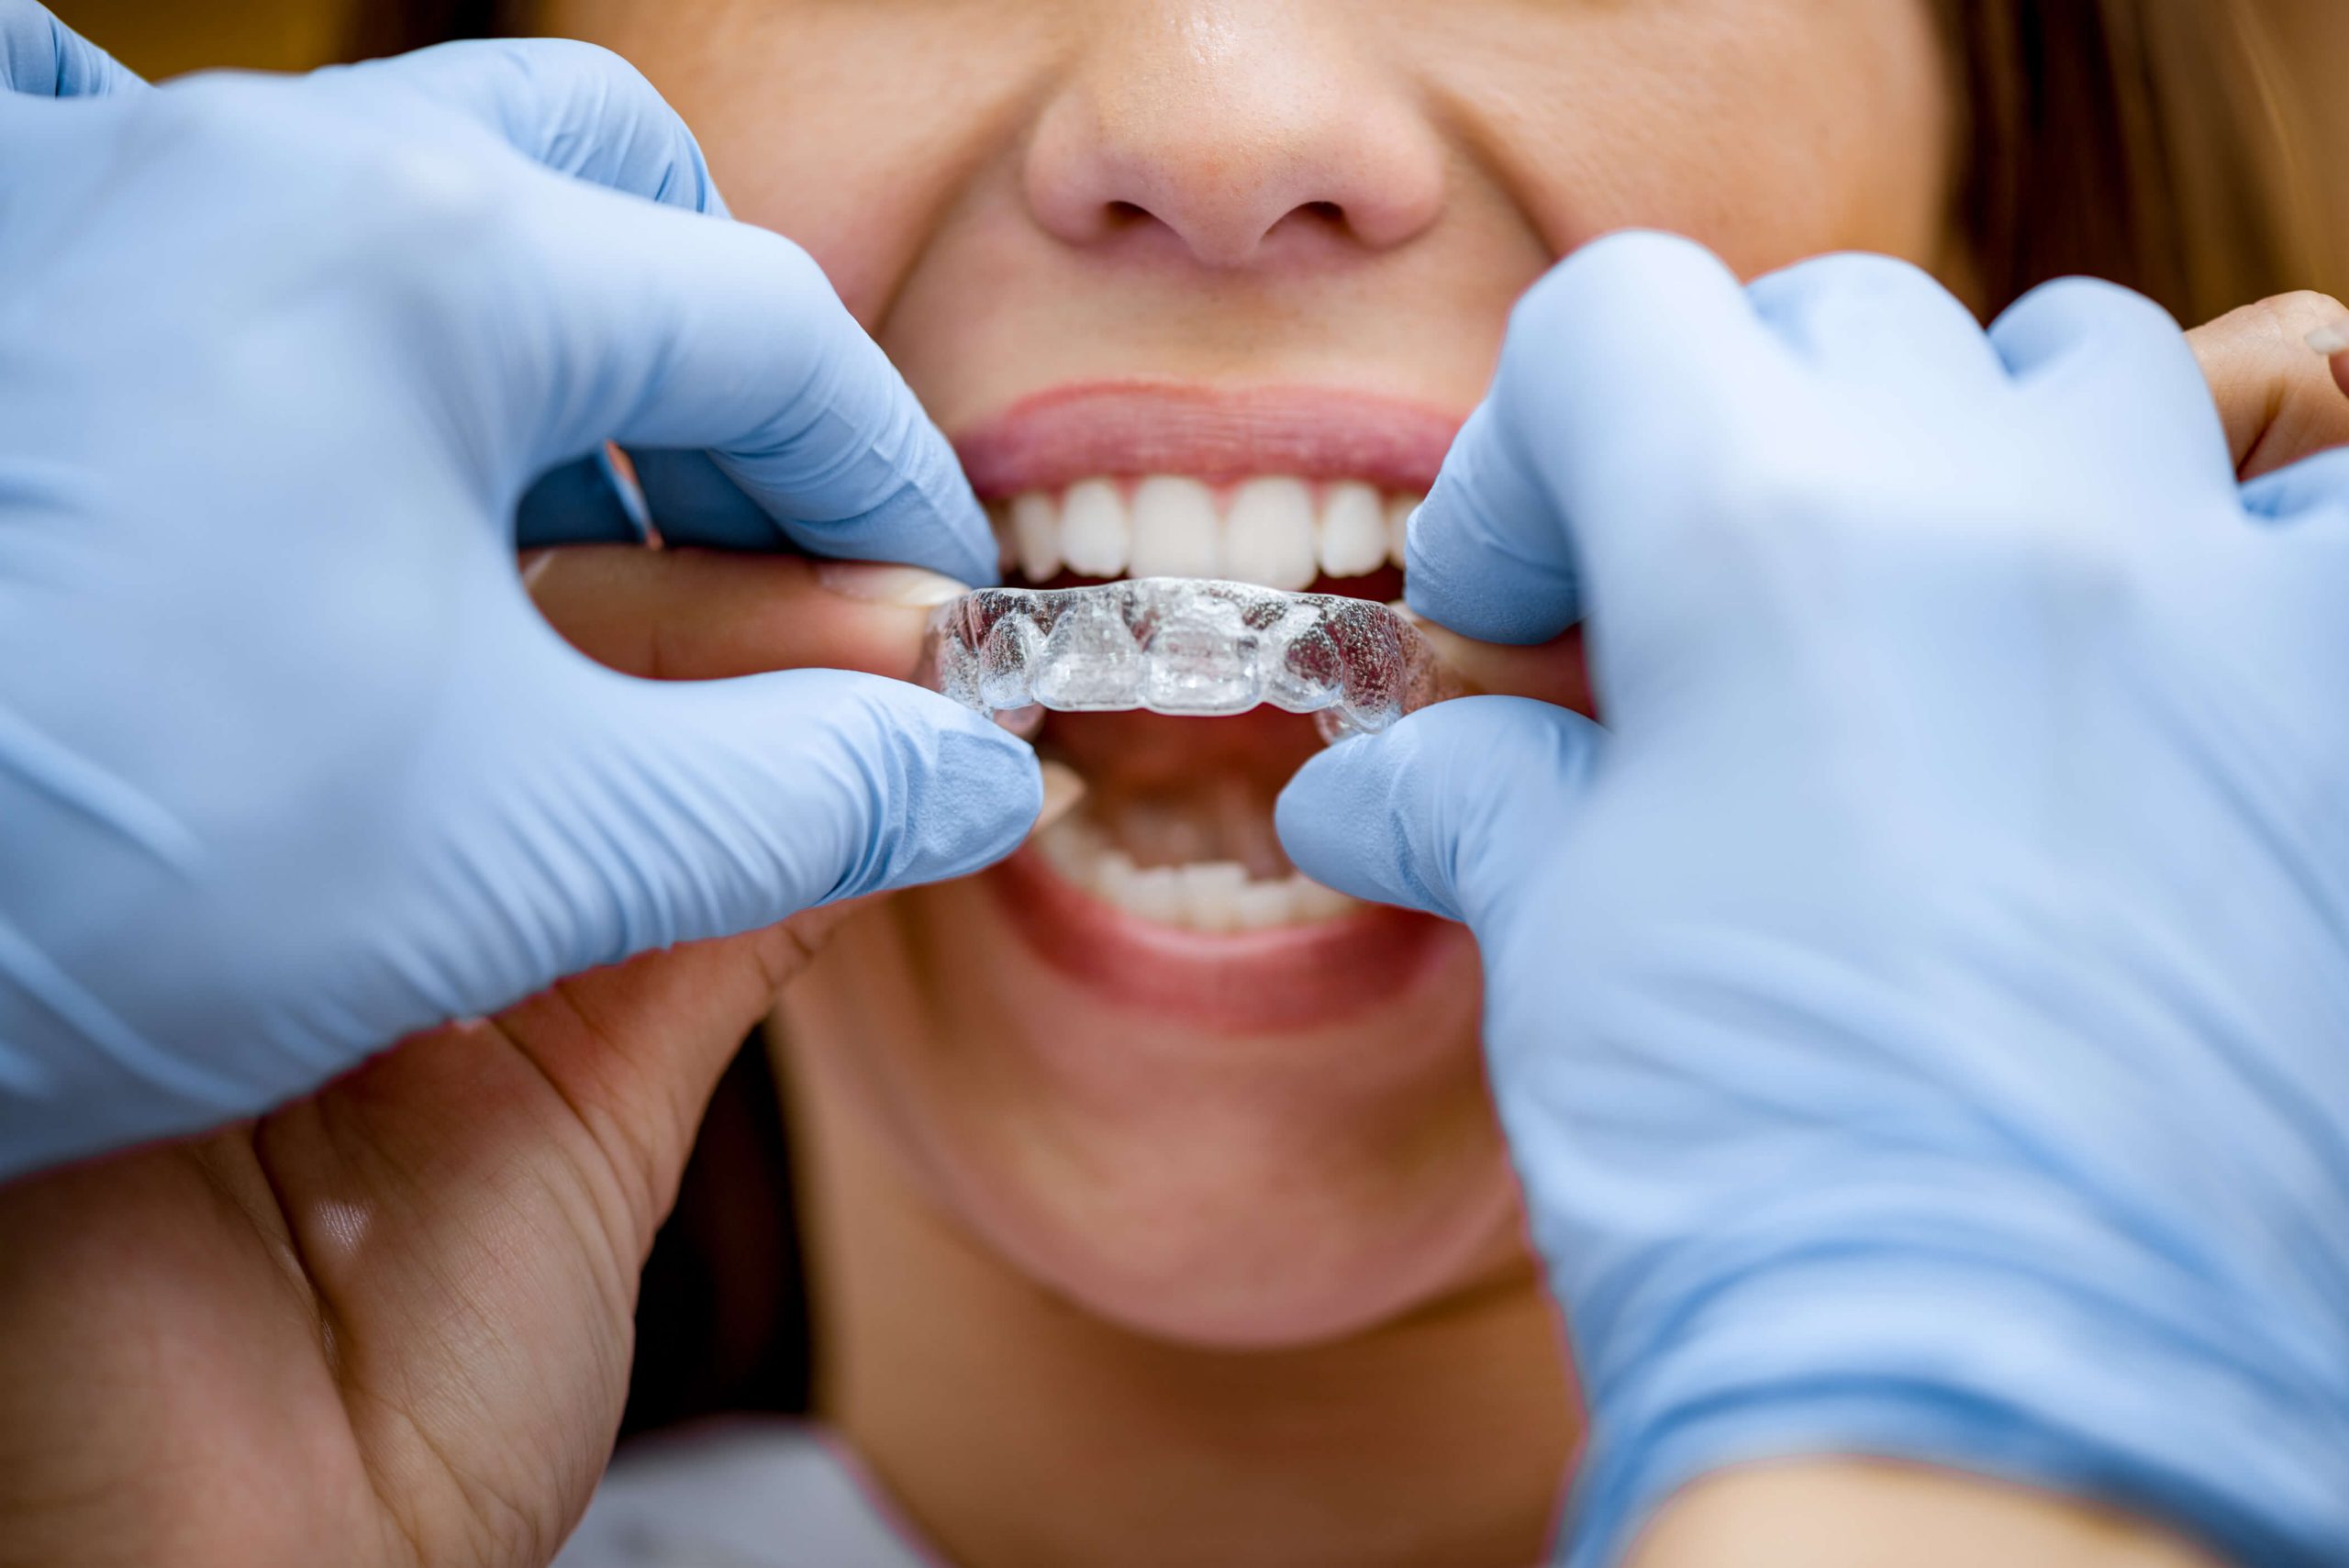 La ortodoncia Invisalign: las dudas más frecuentes